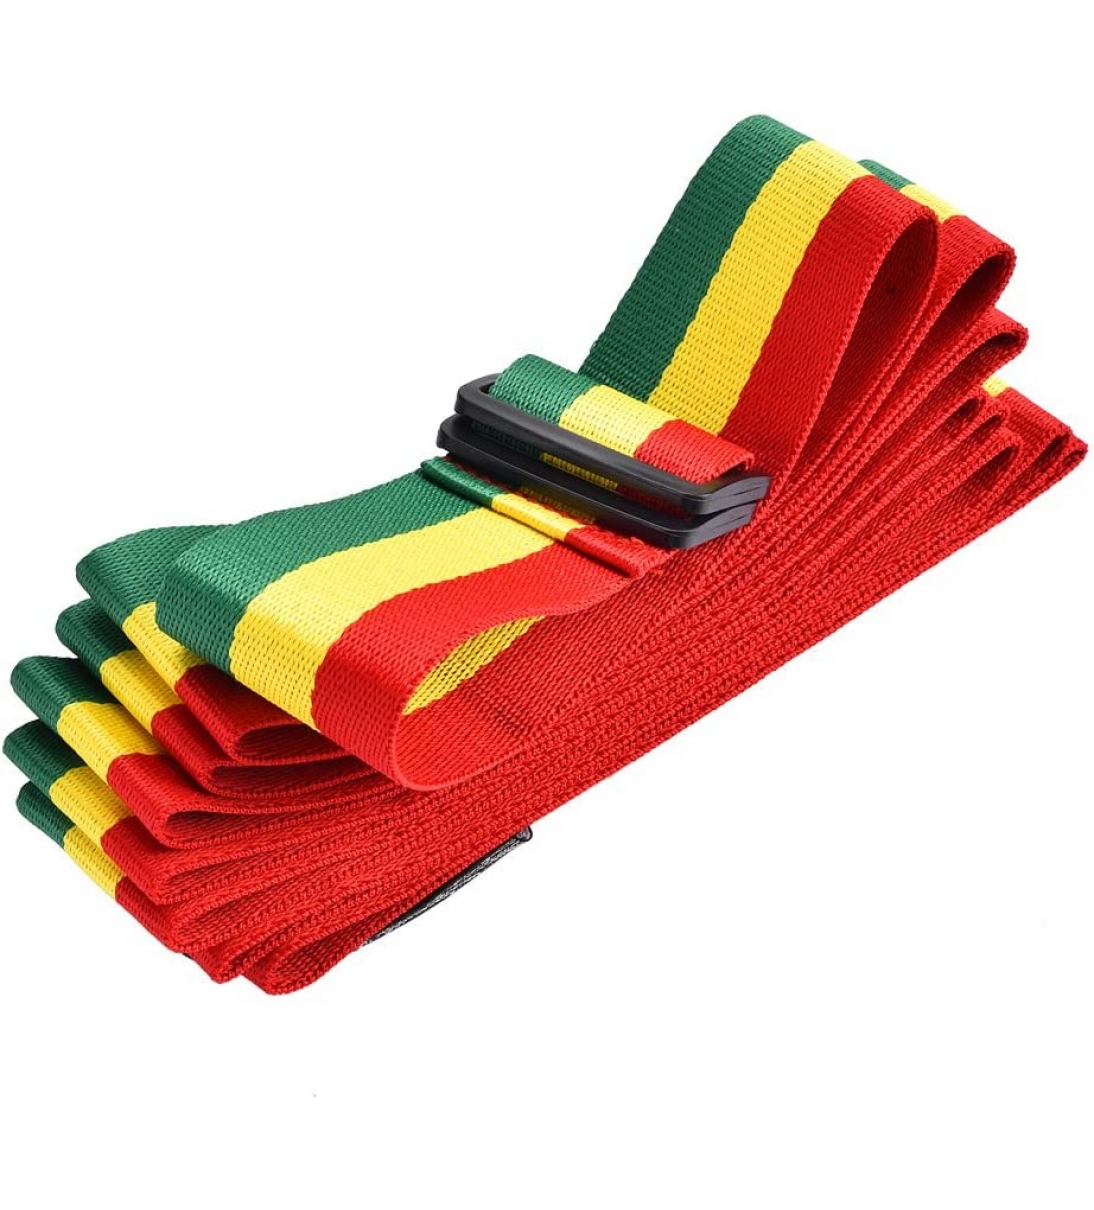 Cinghia di Tamburo Africana, Tracolla Tricolore Portatile a Mano per Tamburo Djembe per Performance sul Palco